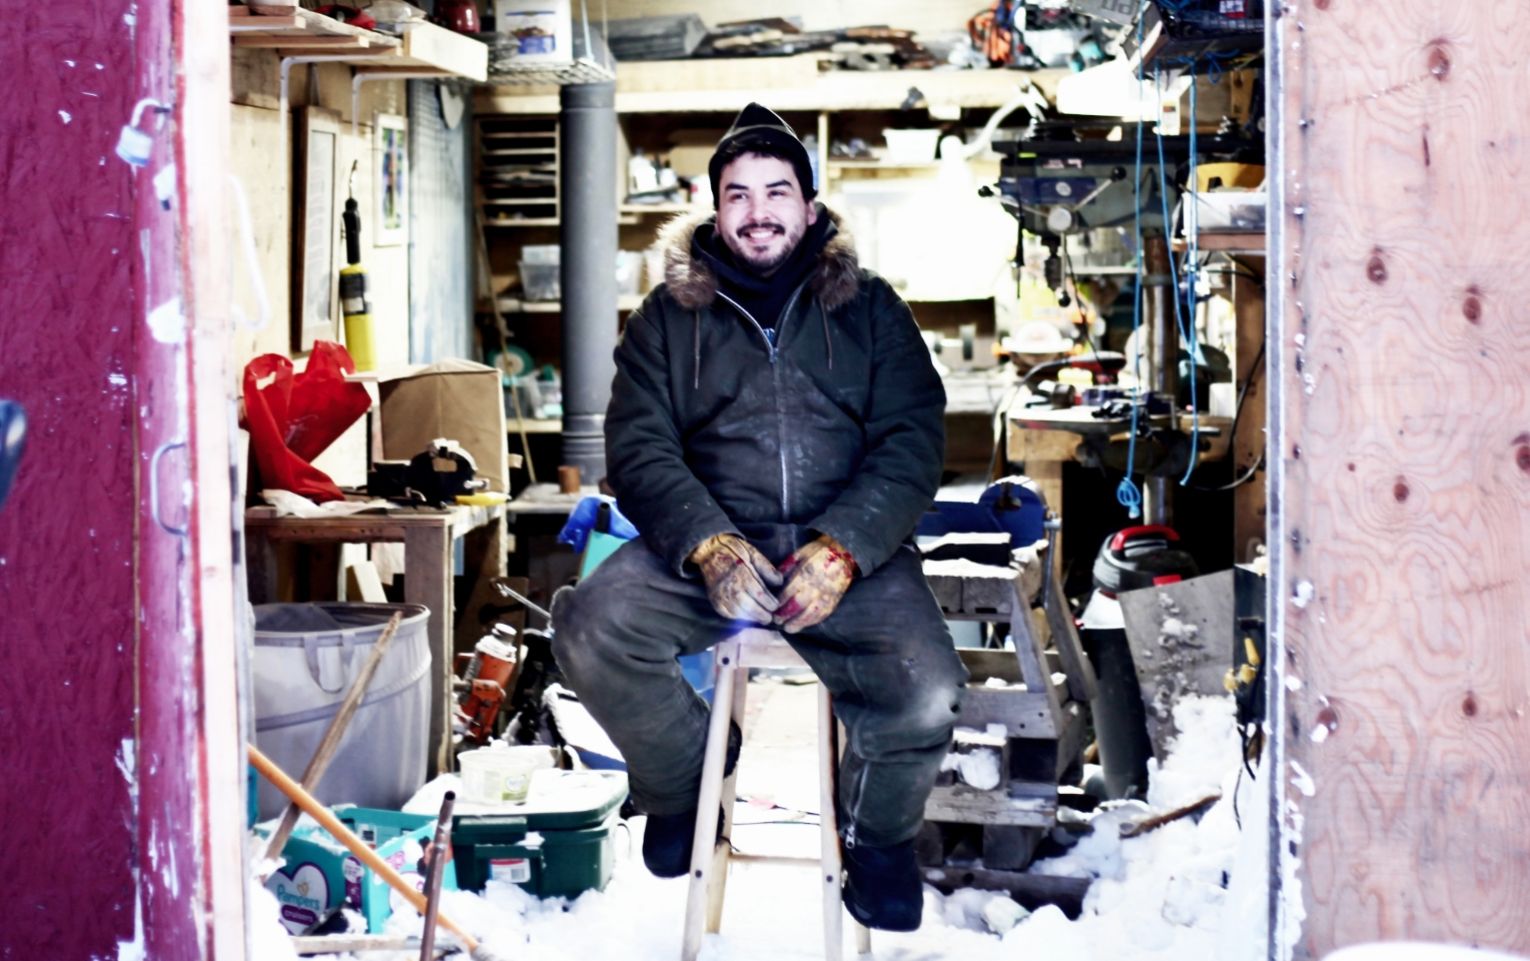 Nooks sitting in his workshop in Arviat, Nunavut